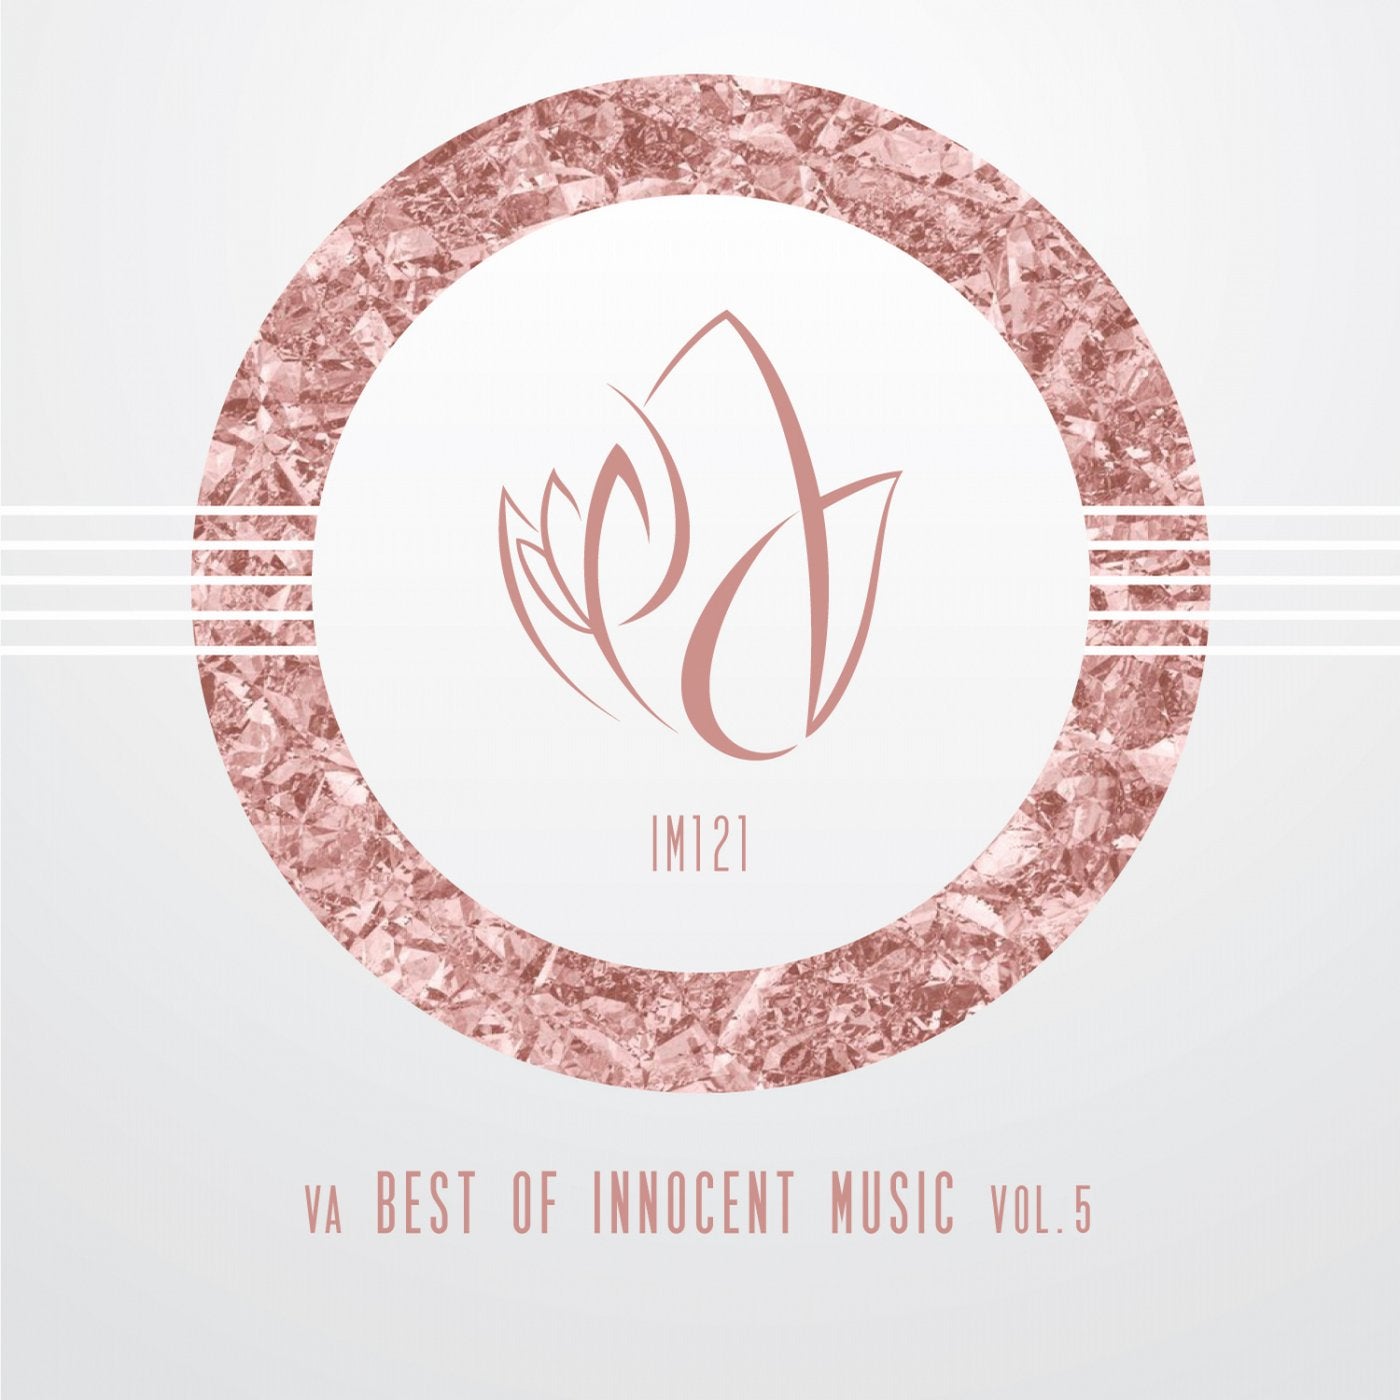 VA Best Of Innocent Music Vol.5